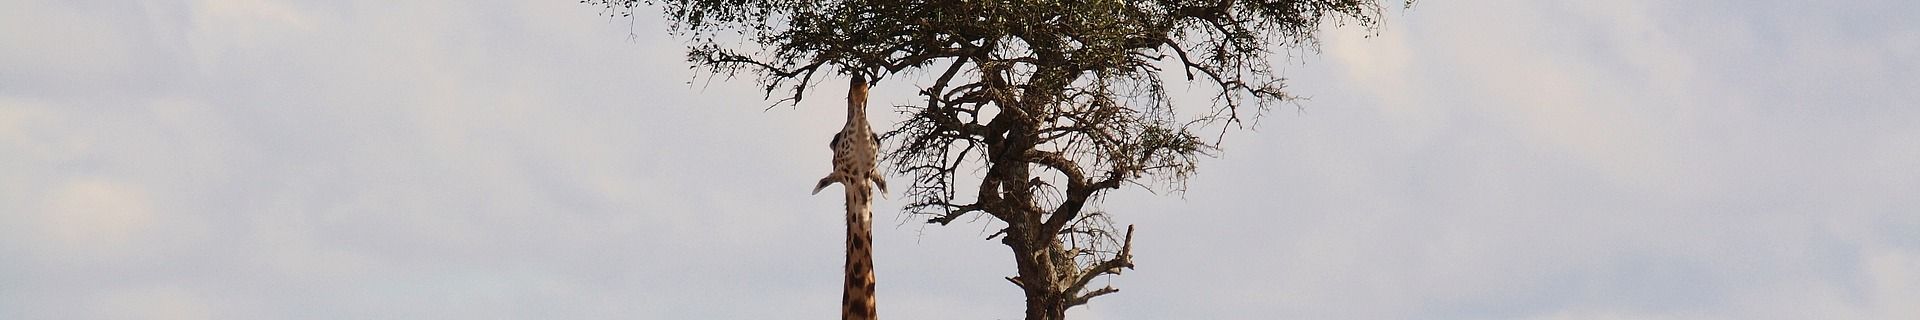 Giraffe Akazienbaum